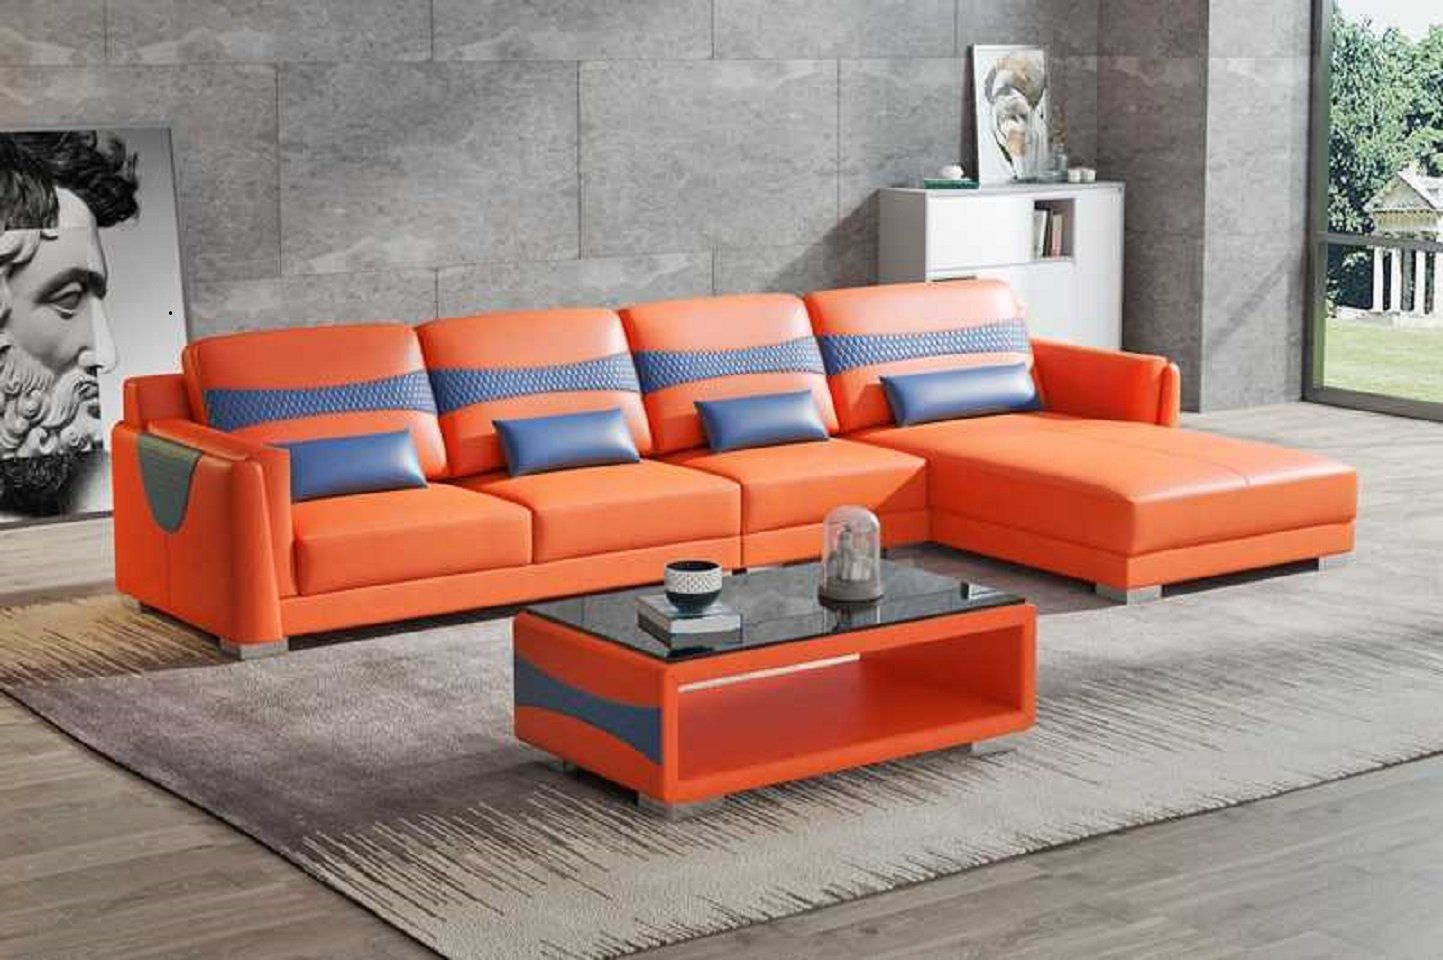 3 JVmoebel Neu, Orange/Blau Europe Made Sofa Couch Form Luxus Liege Wohnzimmer Teile, L Ecksofa in Eckgarnitur Ecksofa